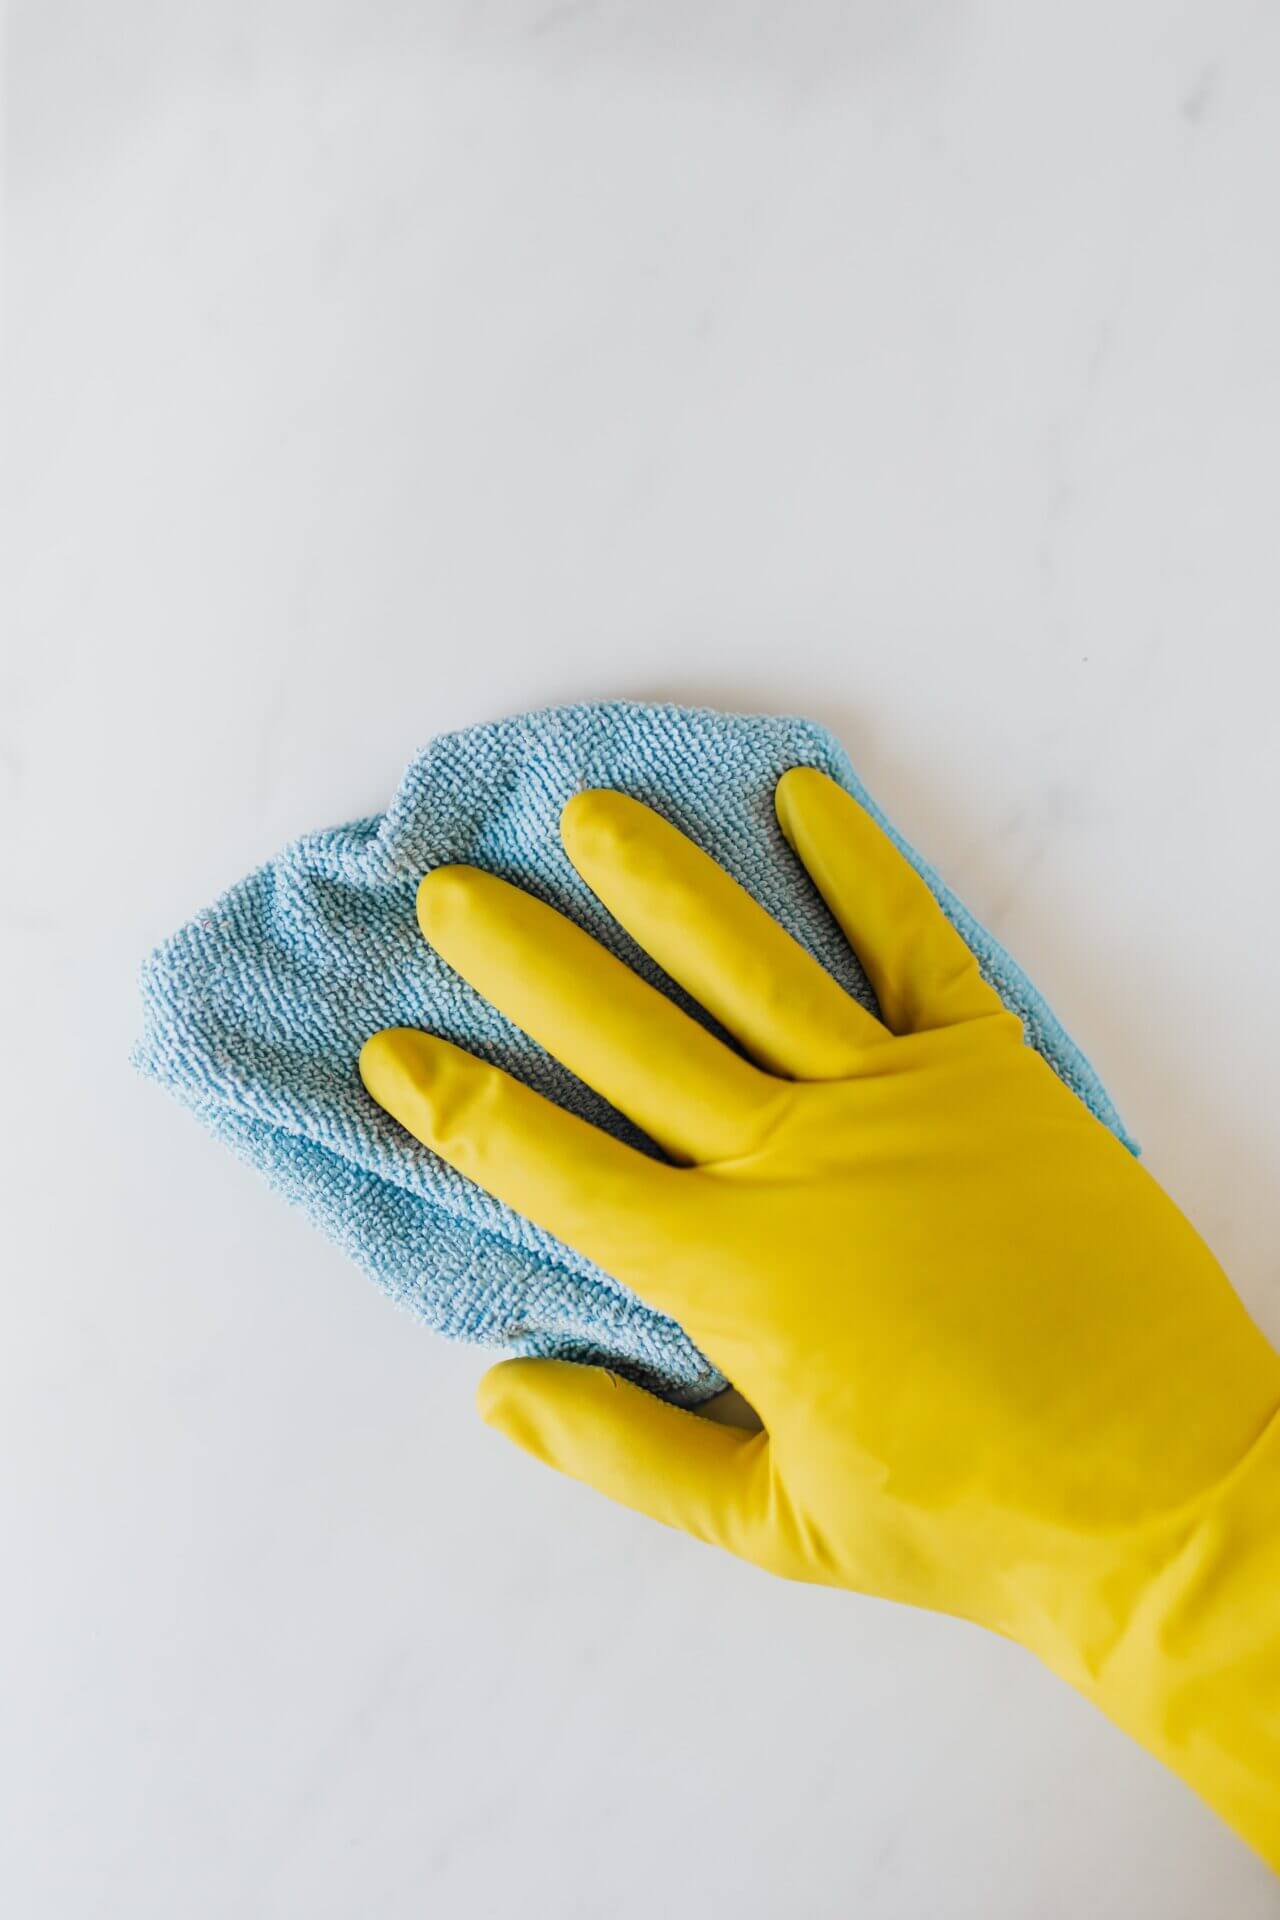 pexels karolina grabowska 4239035 - Fresh Home Cleaning Services.